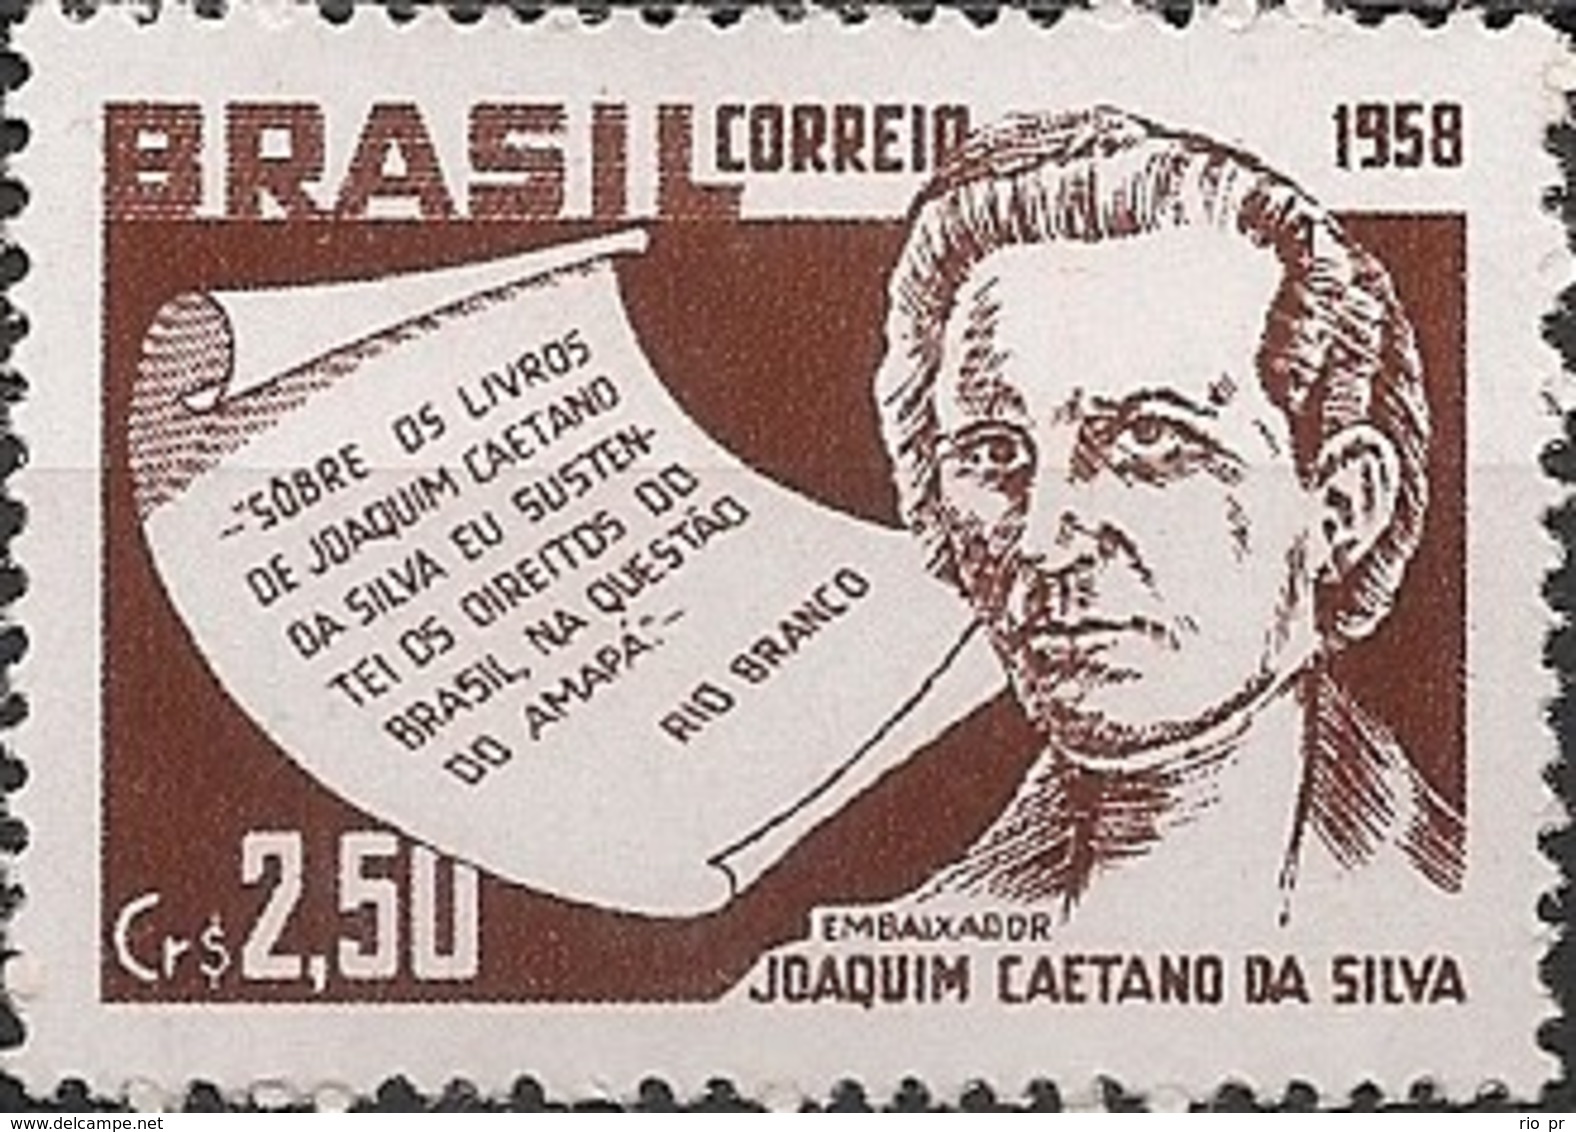 BRAZIL - JOAQUIM CAETANO DA SILVA (1810-1873), SCIENTIST AND HISTORIAN 1958 - MNH - Unused Stamps